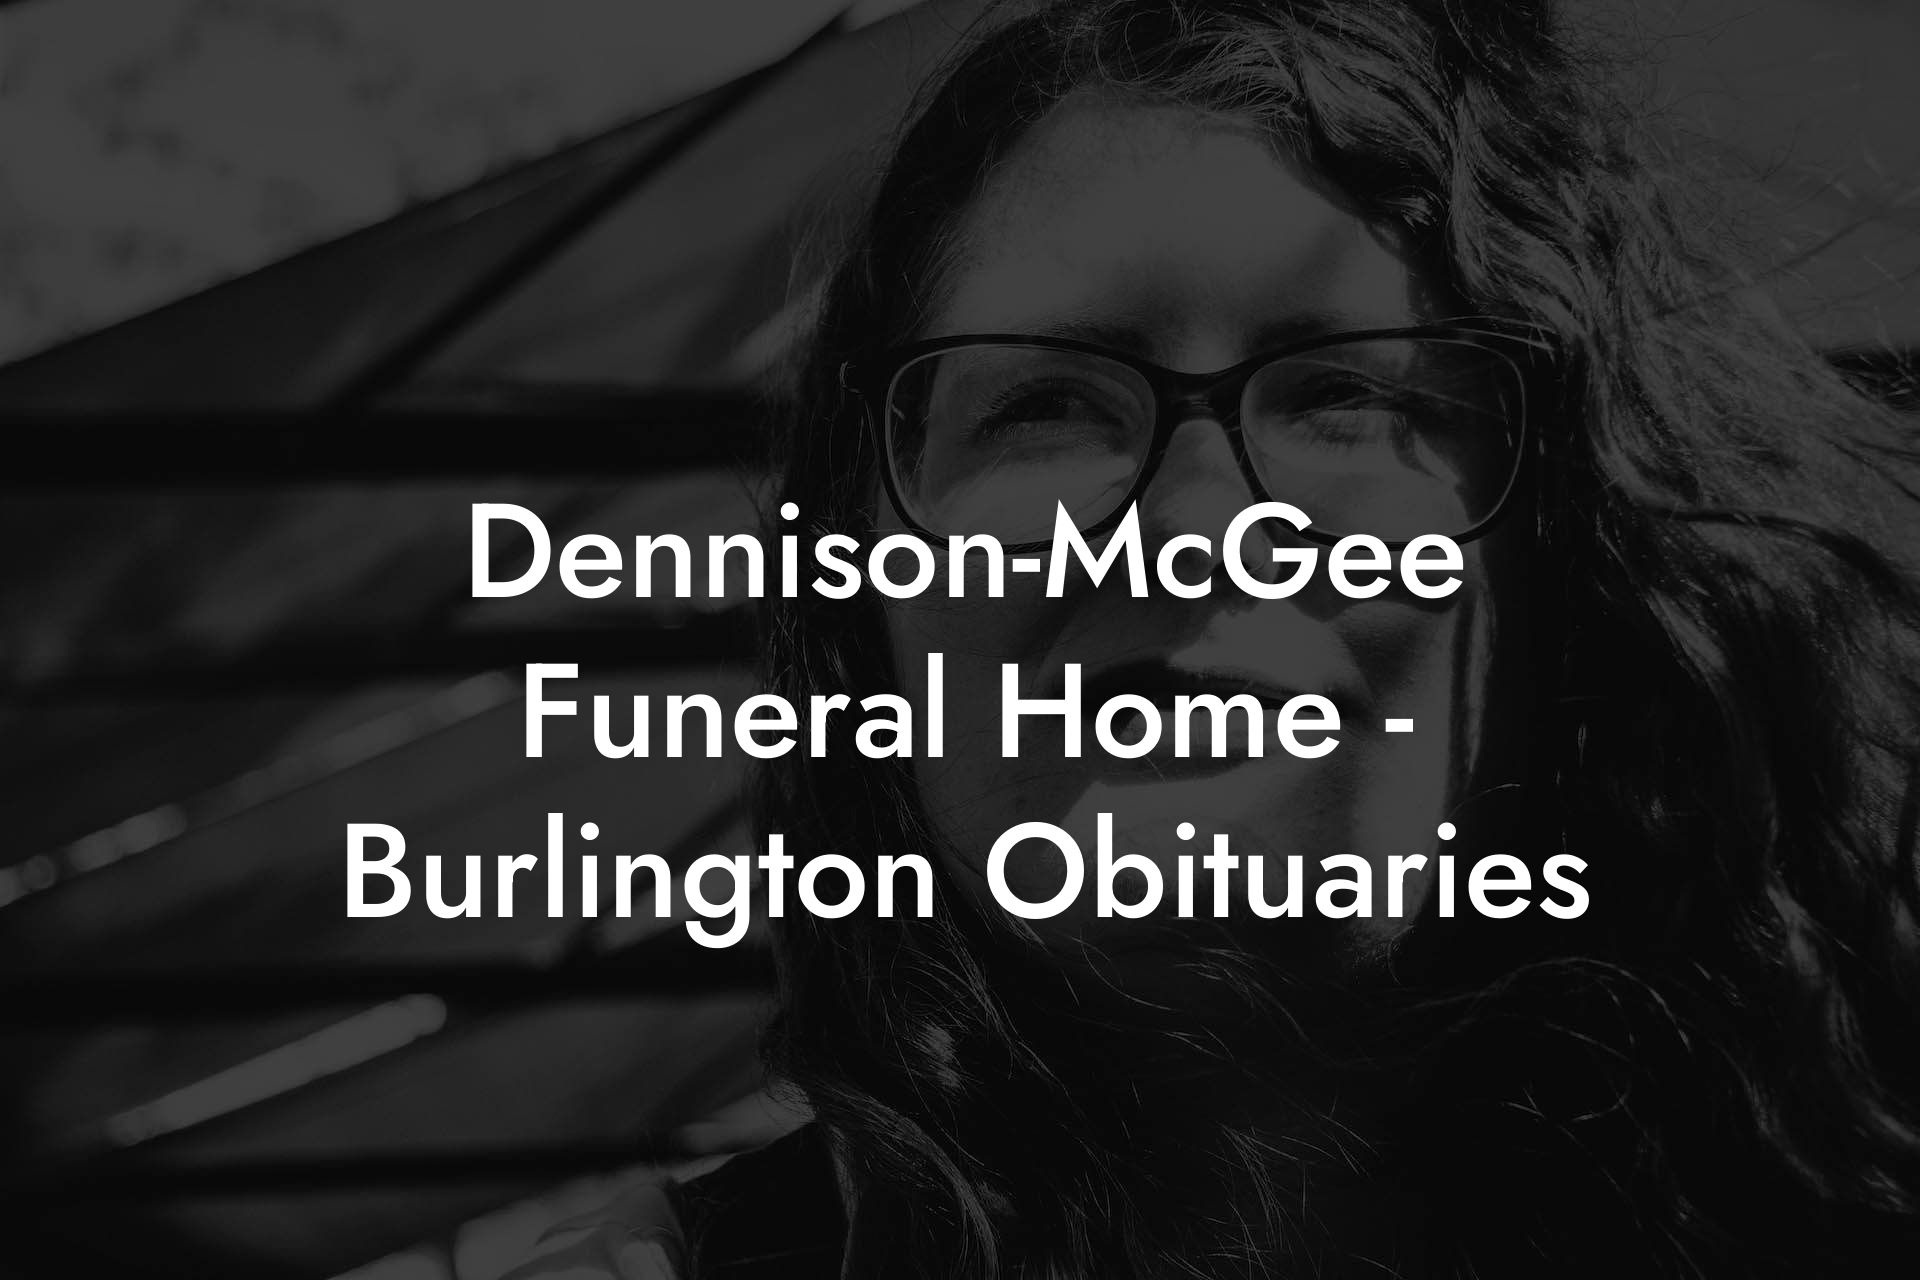 Dennison-McGee Funeral Home - Burlington Obituaries